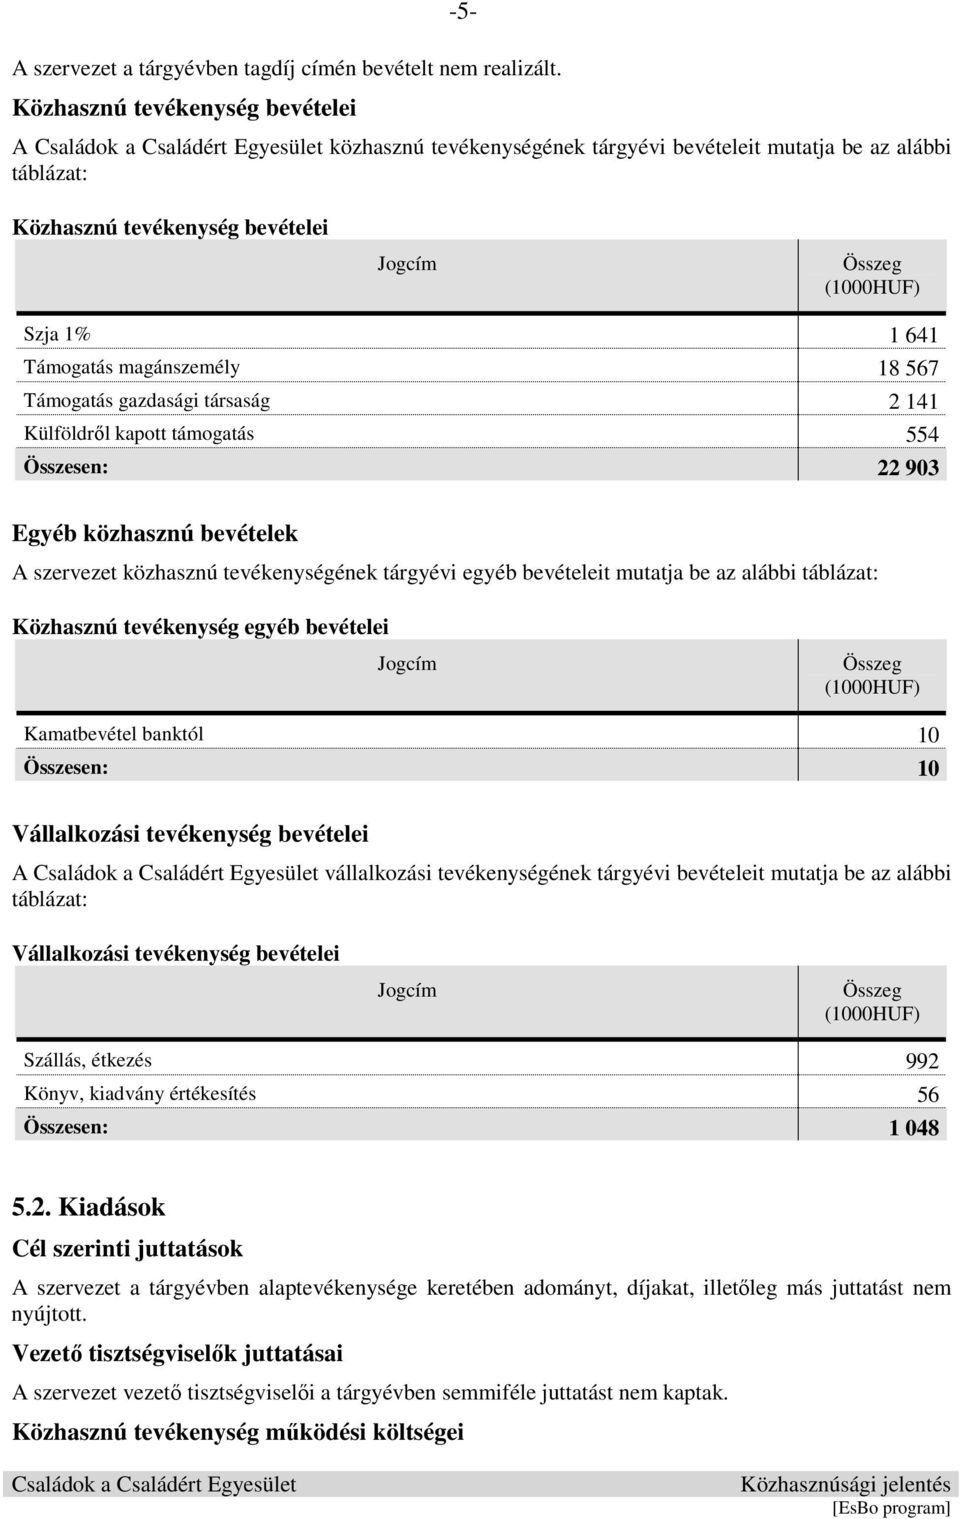 gazdasági társaság 2 141 Külföldrıl kapott támogatás 554 Összesen: 22 903 Egyéb közhasznú bevételek A szervezet közhasznú tevékenységének tárgyévi egyéb bevételeit mutatja be az alábbi táblázat: